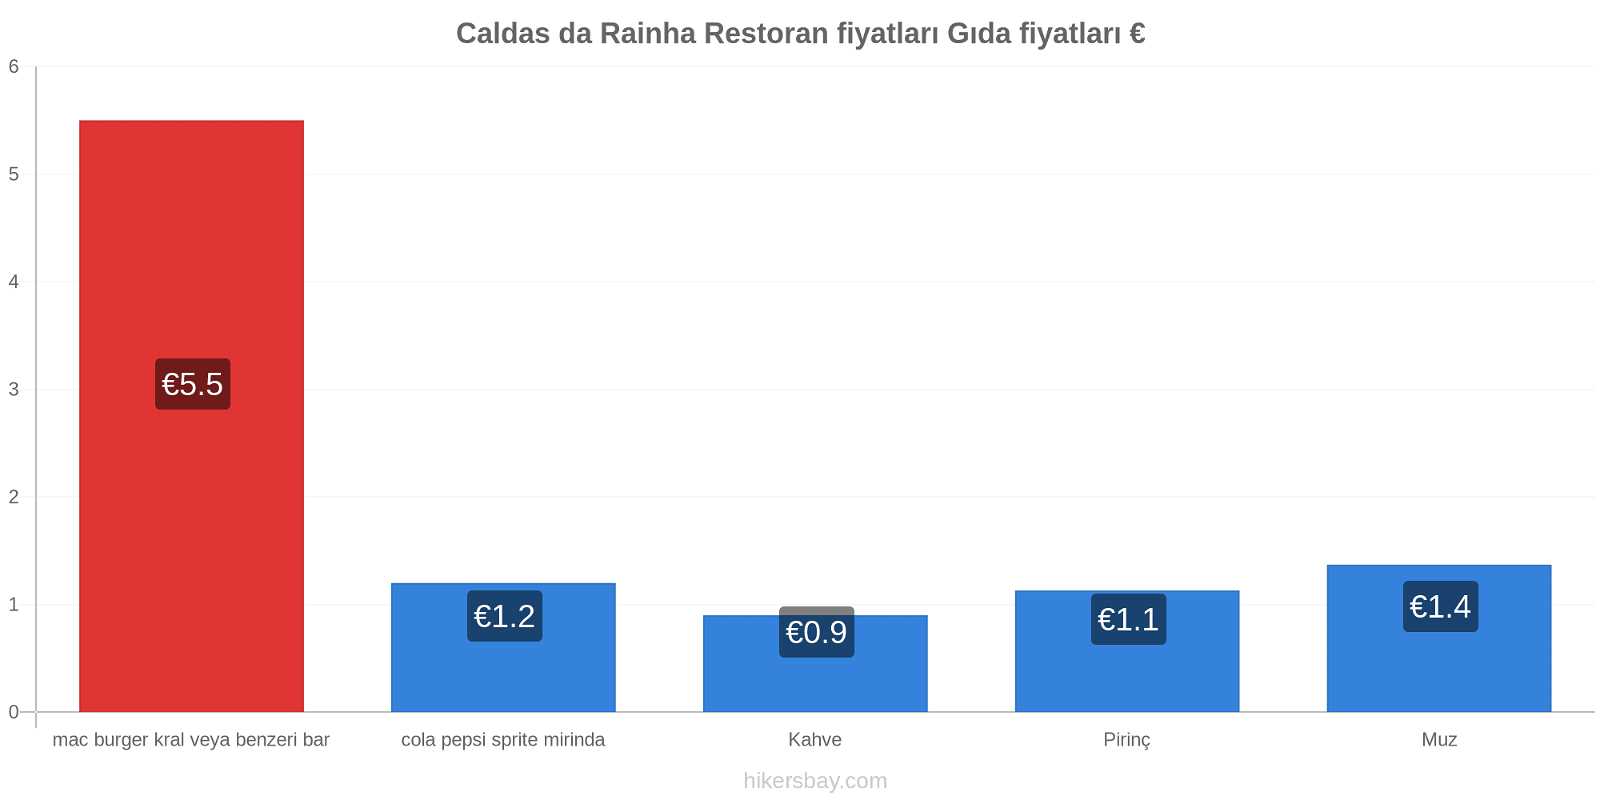 Caldas da Rainha fiyat değişiklikleri hikersbay.com